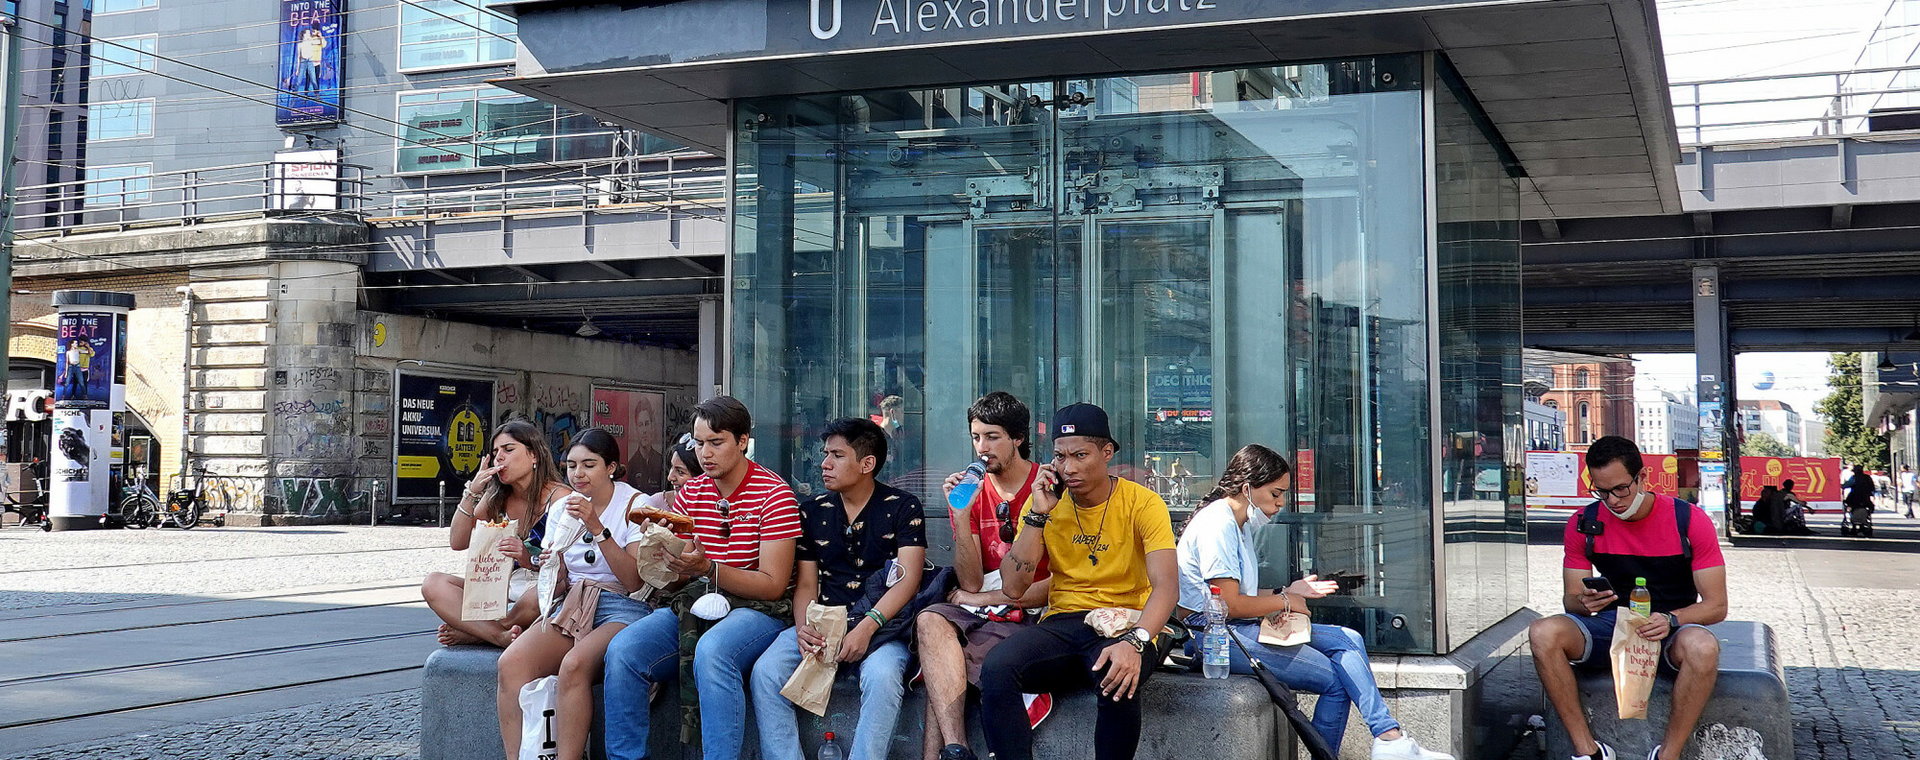 Turyści latem na Alexanderplatz w Berlinie